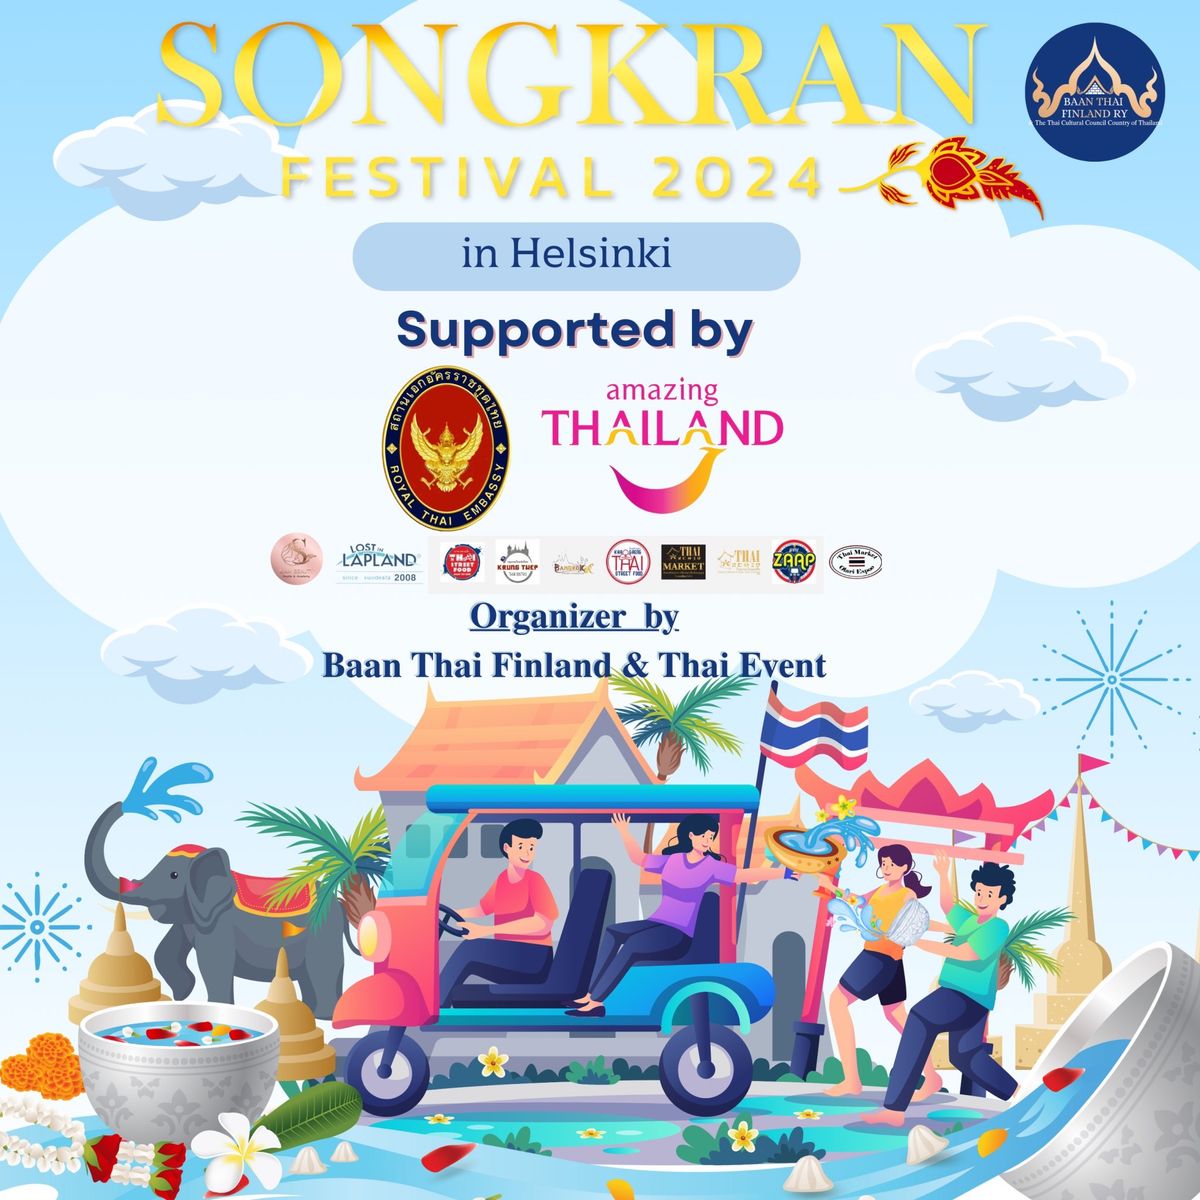 Thai Songkran Festival at Kamppi